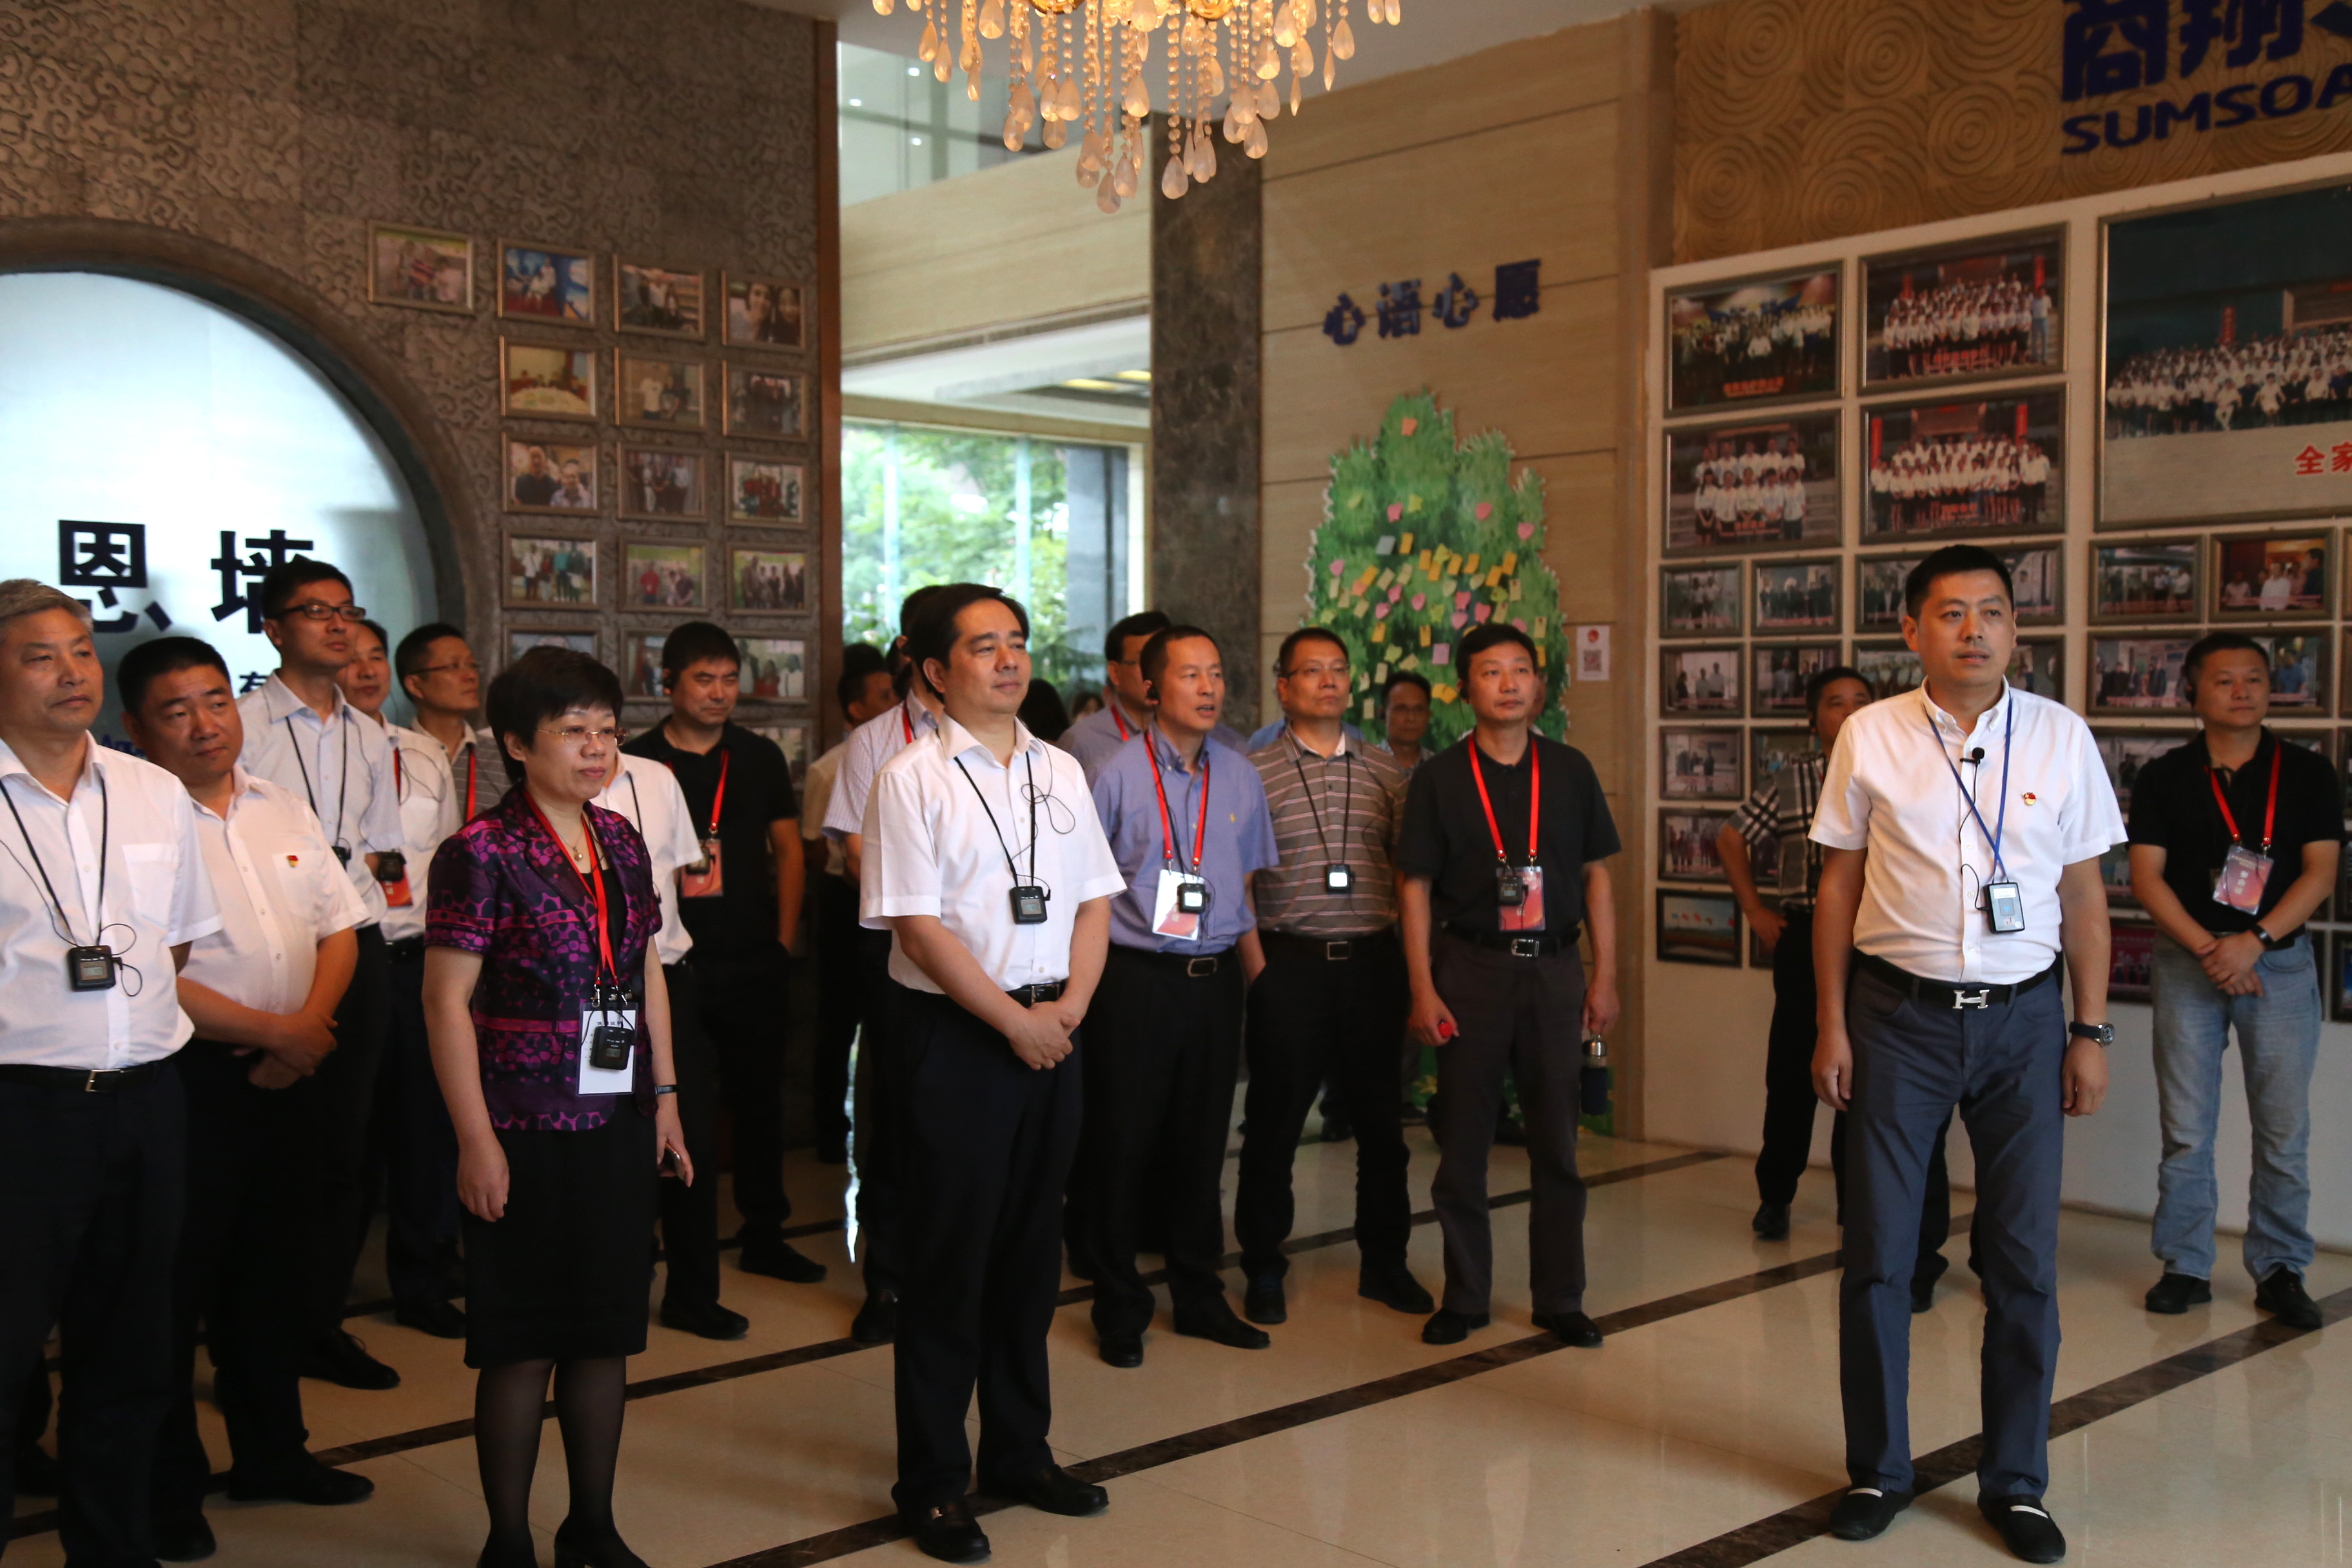 杭州市委副书记马晓晖与各县,市(区)副书记,群团主要负责人参观指导.